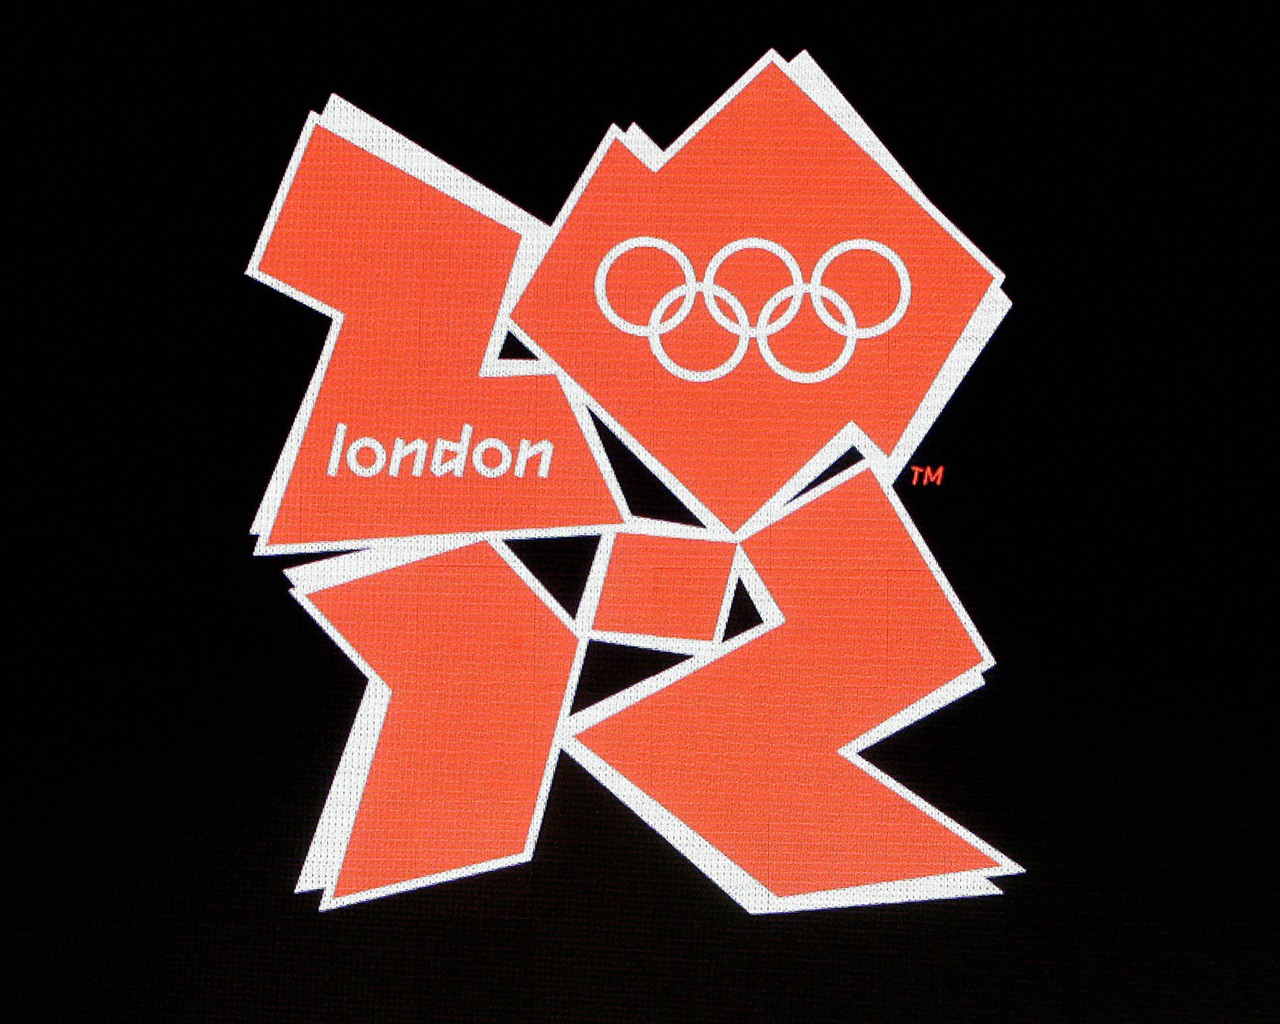 Londres 2012 Olimpiadas fondos temáticos (2) #30 - 1280x1024